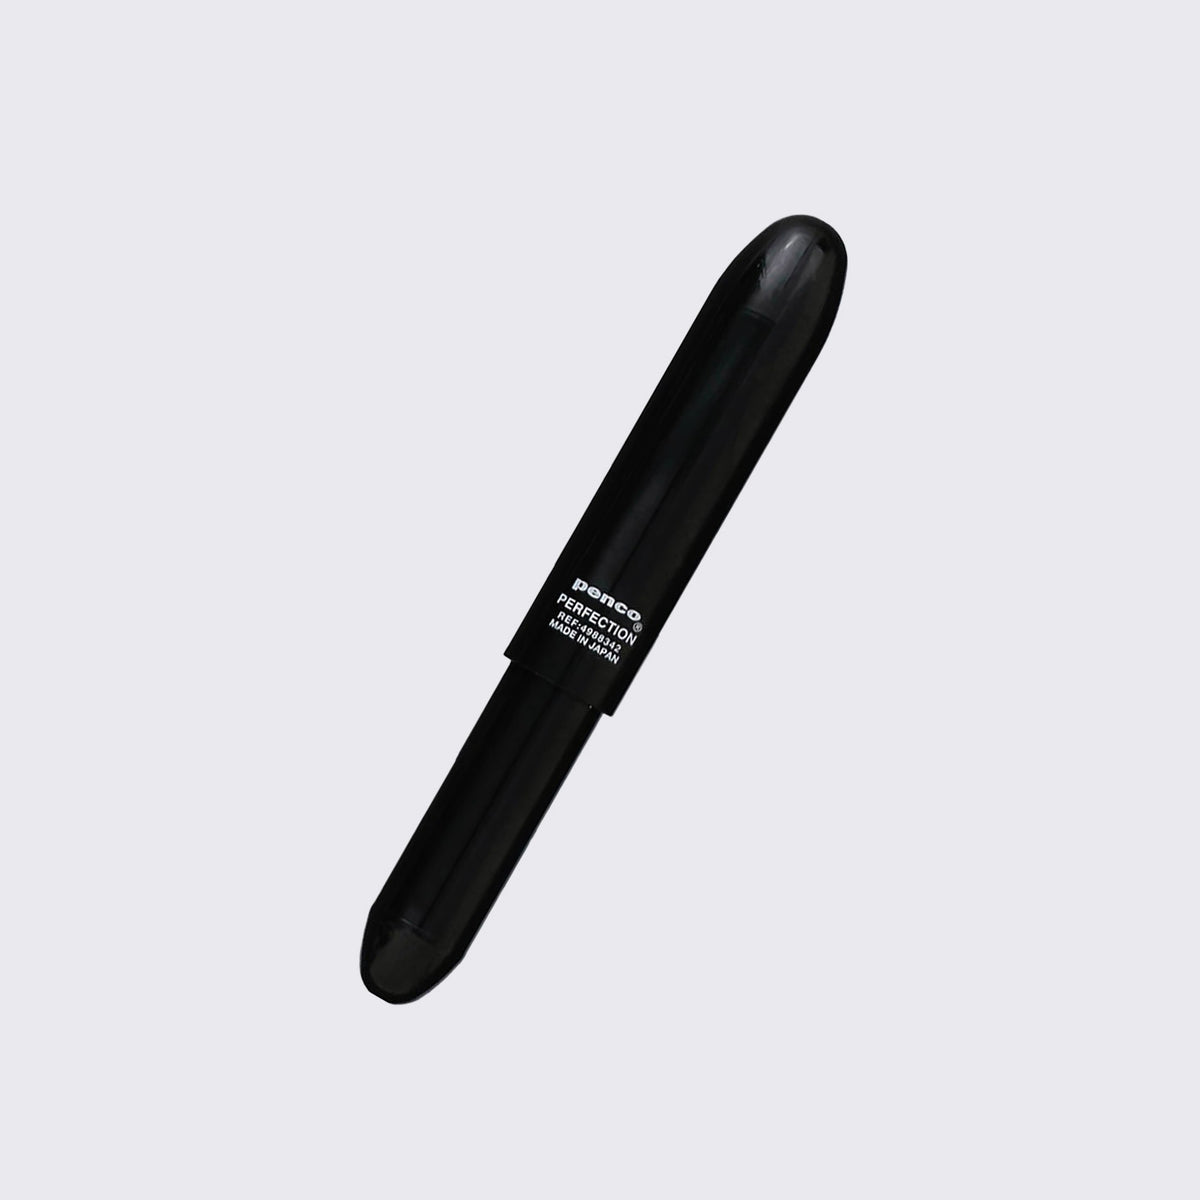 Penco / Bullet Ballpoint Pen Light / Black